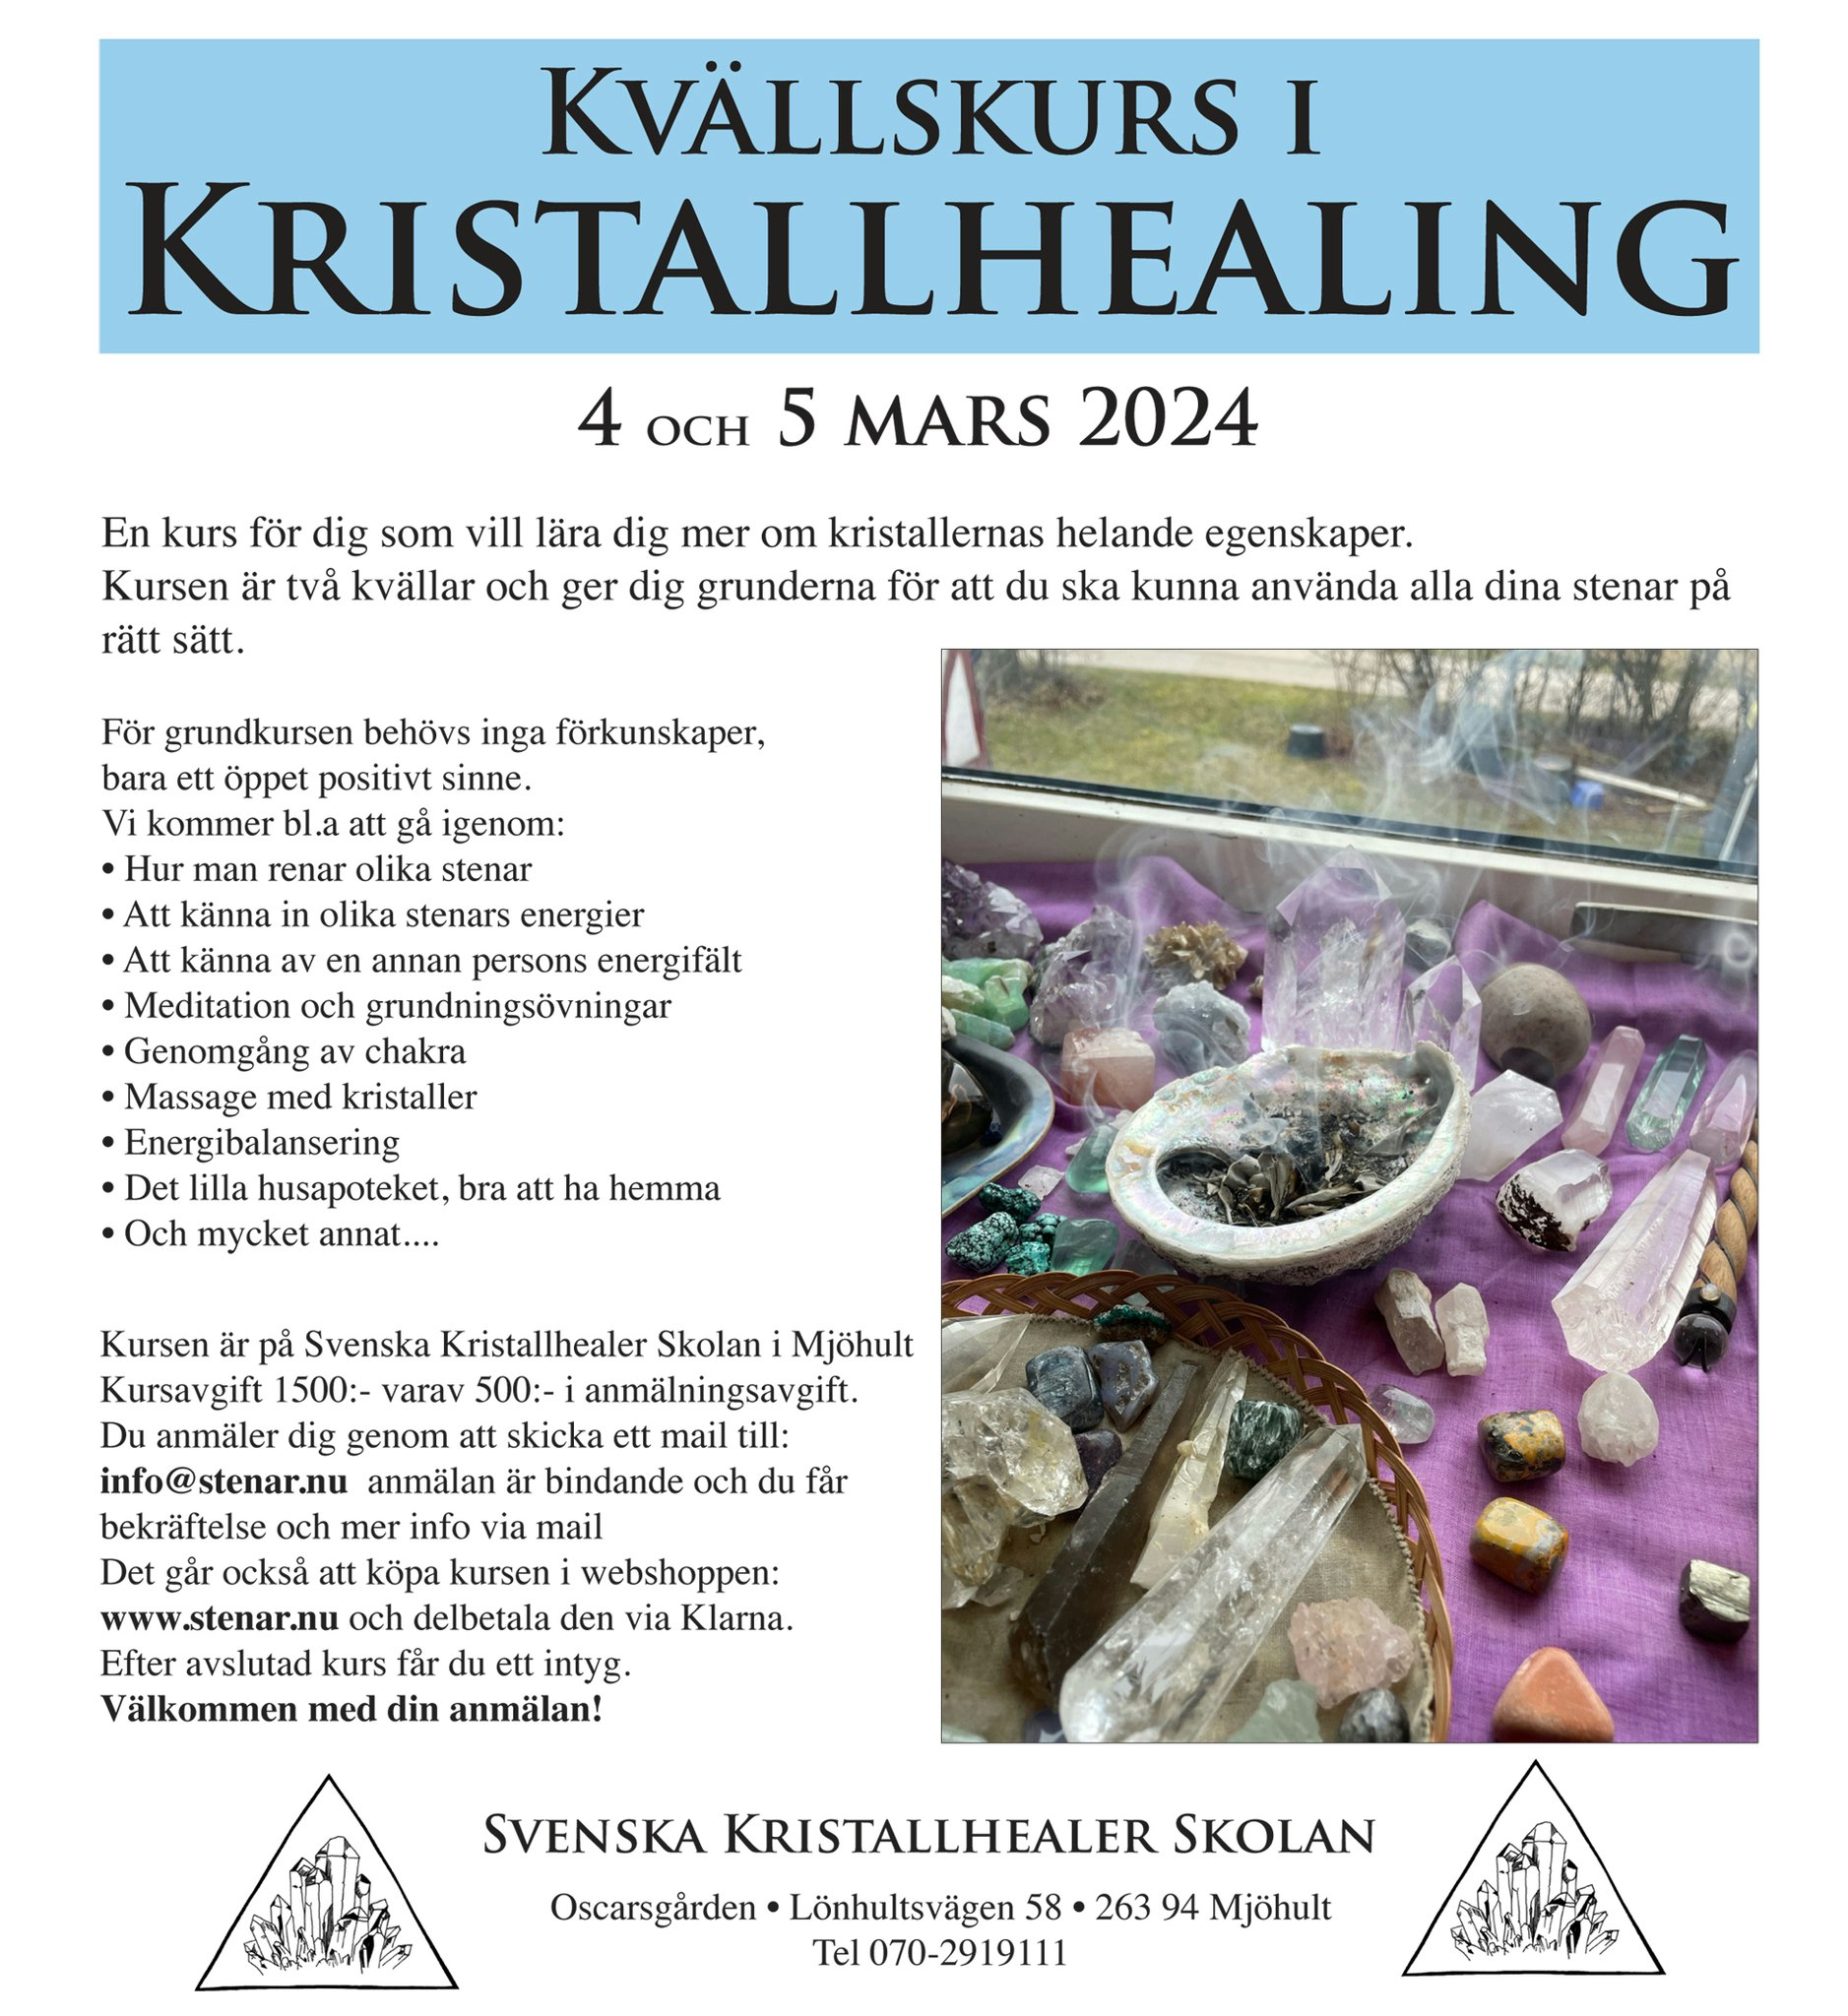 Kristallhealing, grundkurs, två kvällar 4 och 5 mars